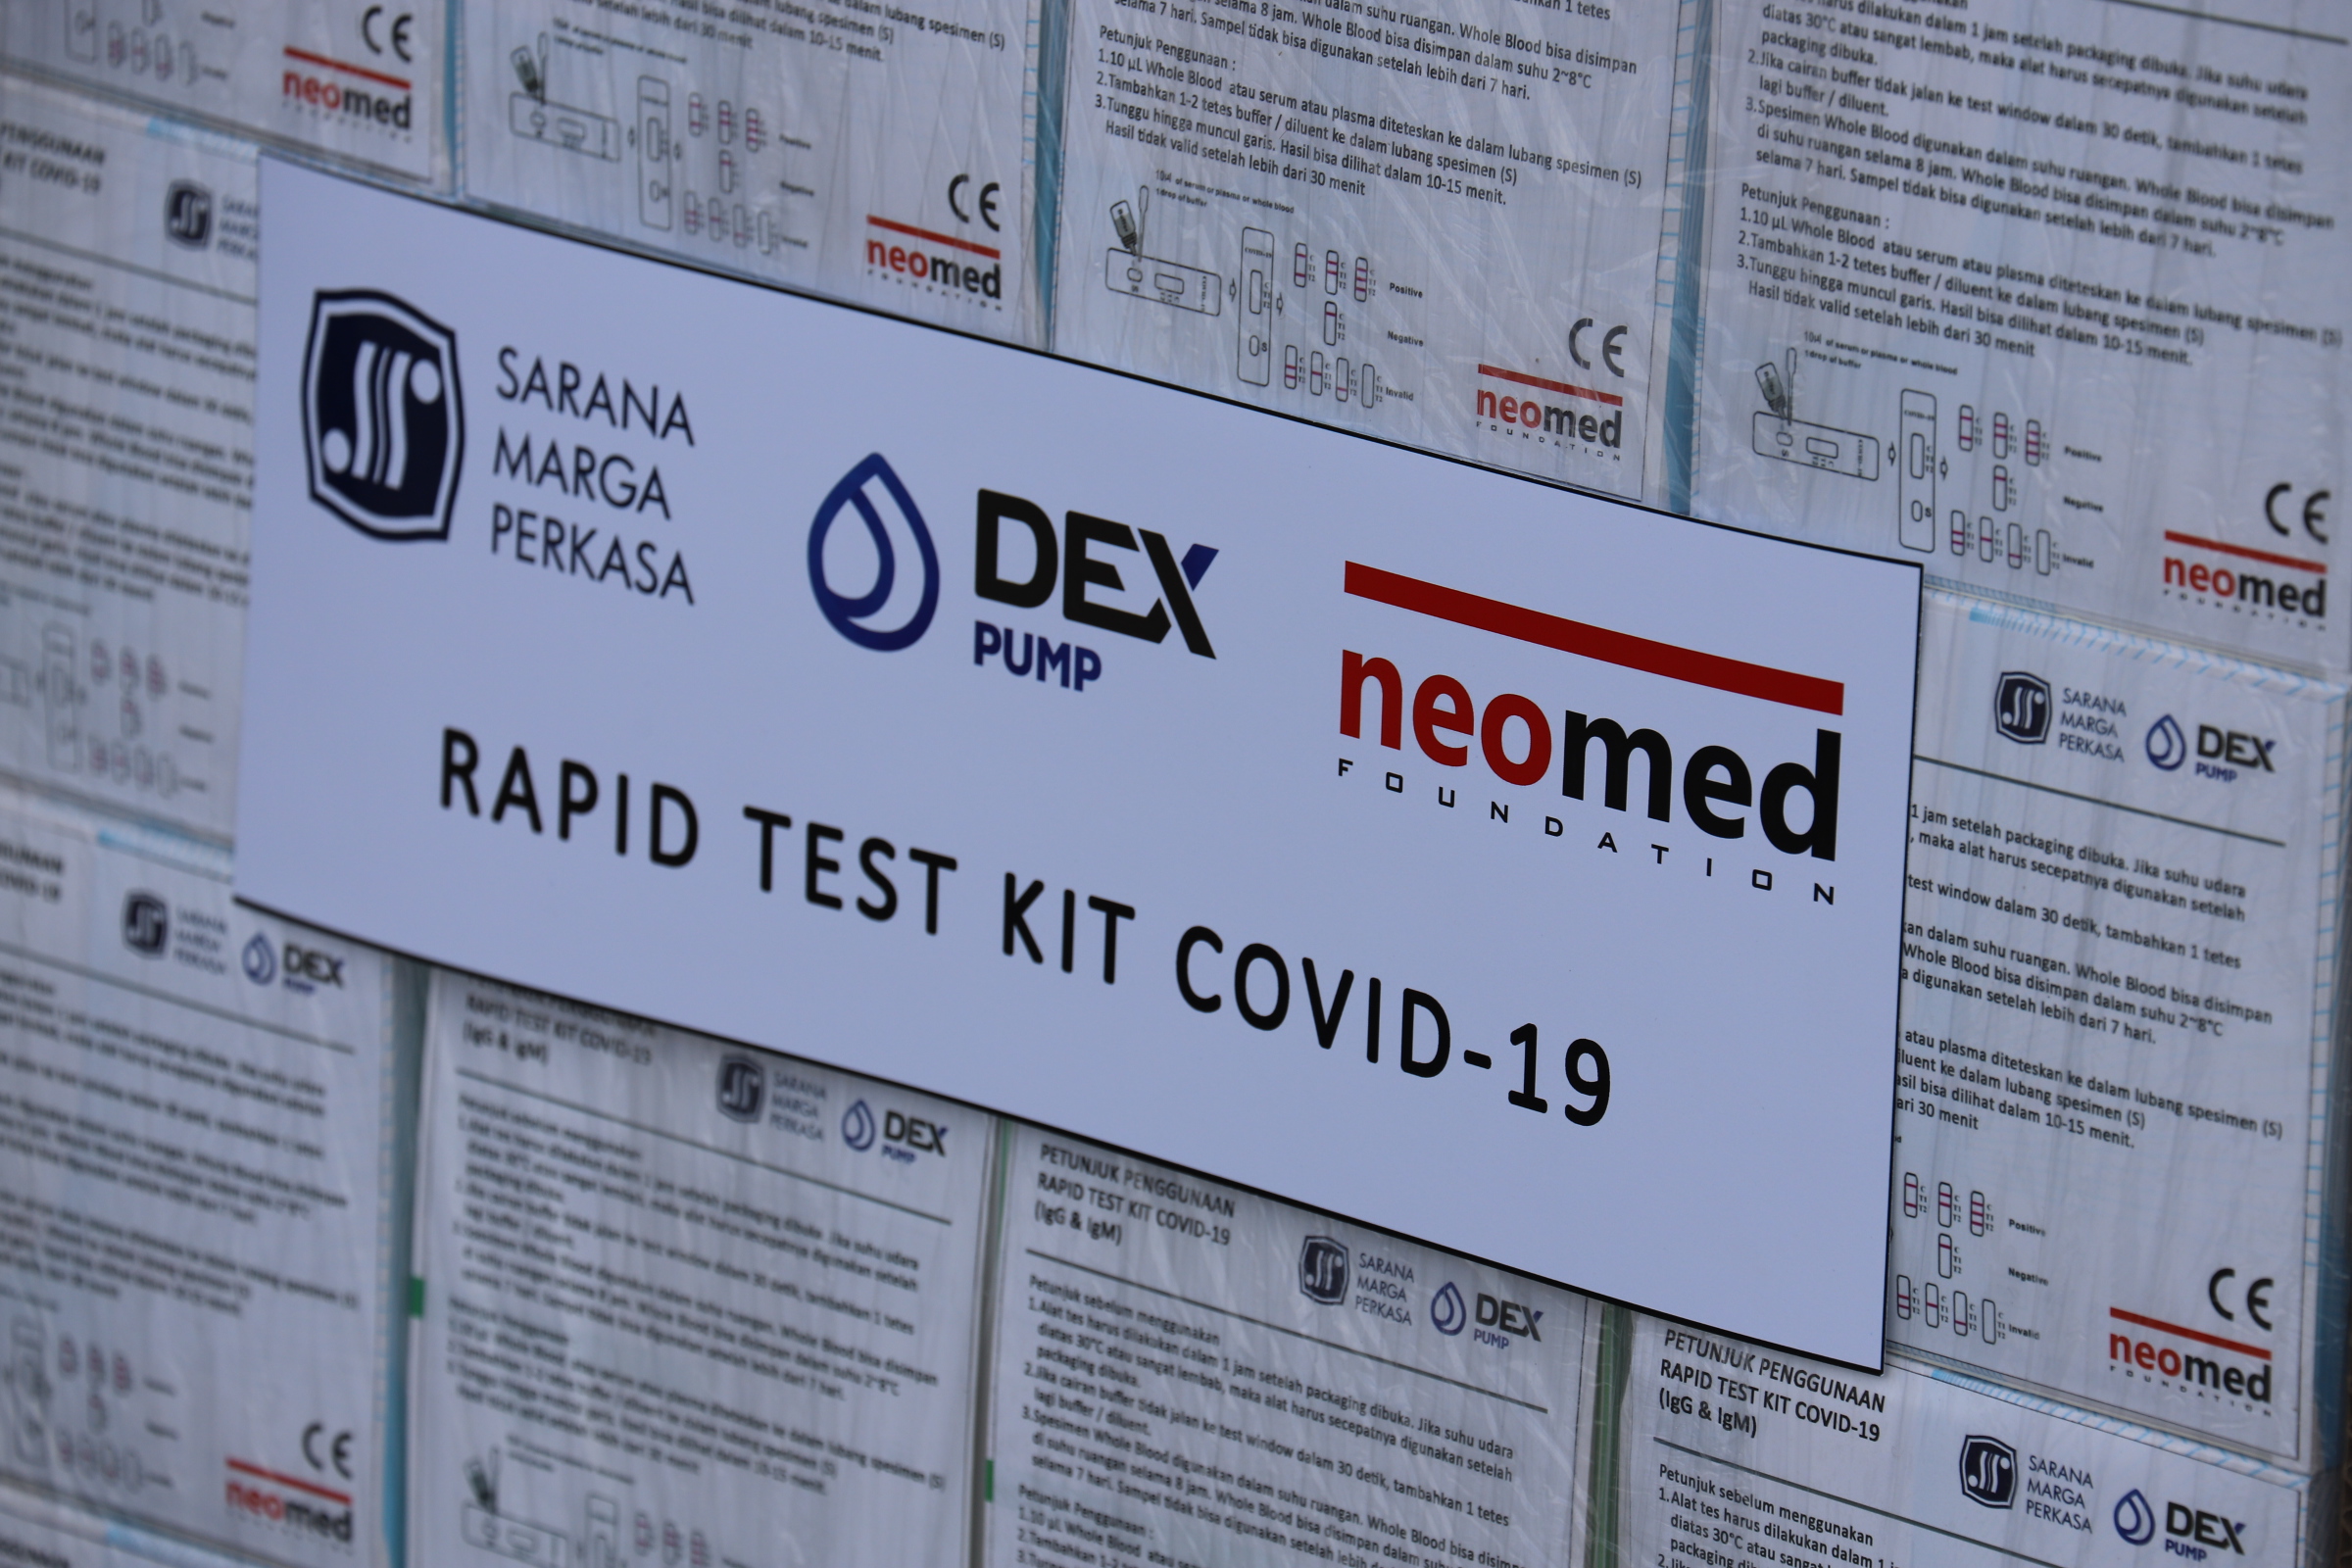 Bantuan rapid test yang diterima oleh pemkot surabaya yang siap didistribusikan ke puskesmas dan rumah sakit di Surabaya